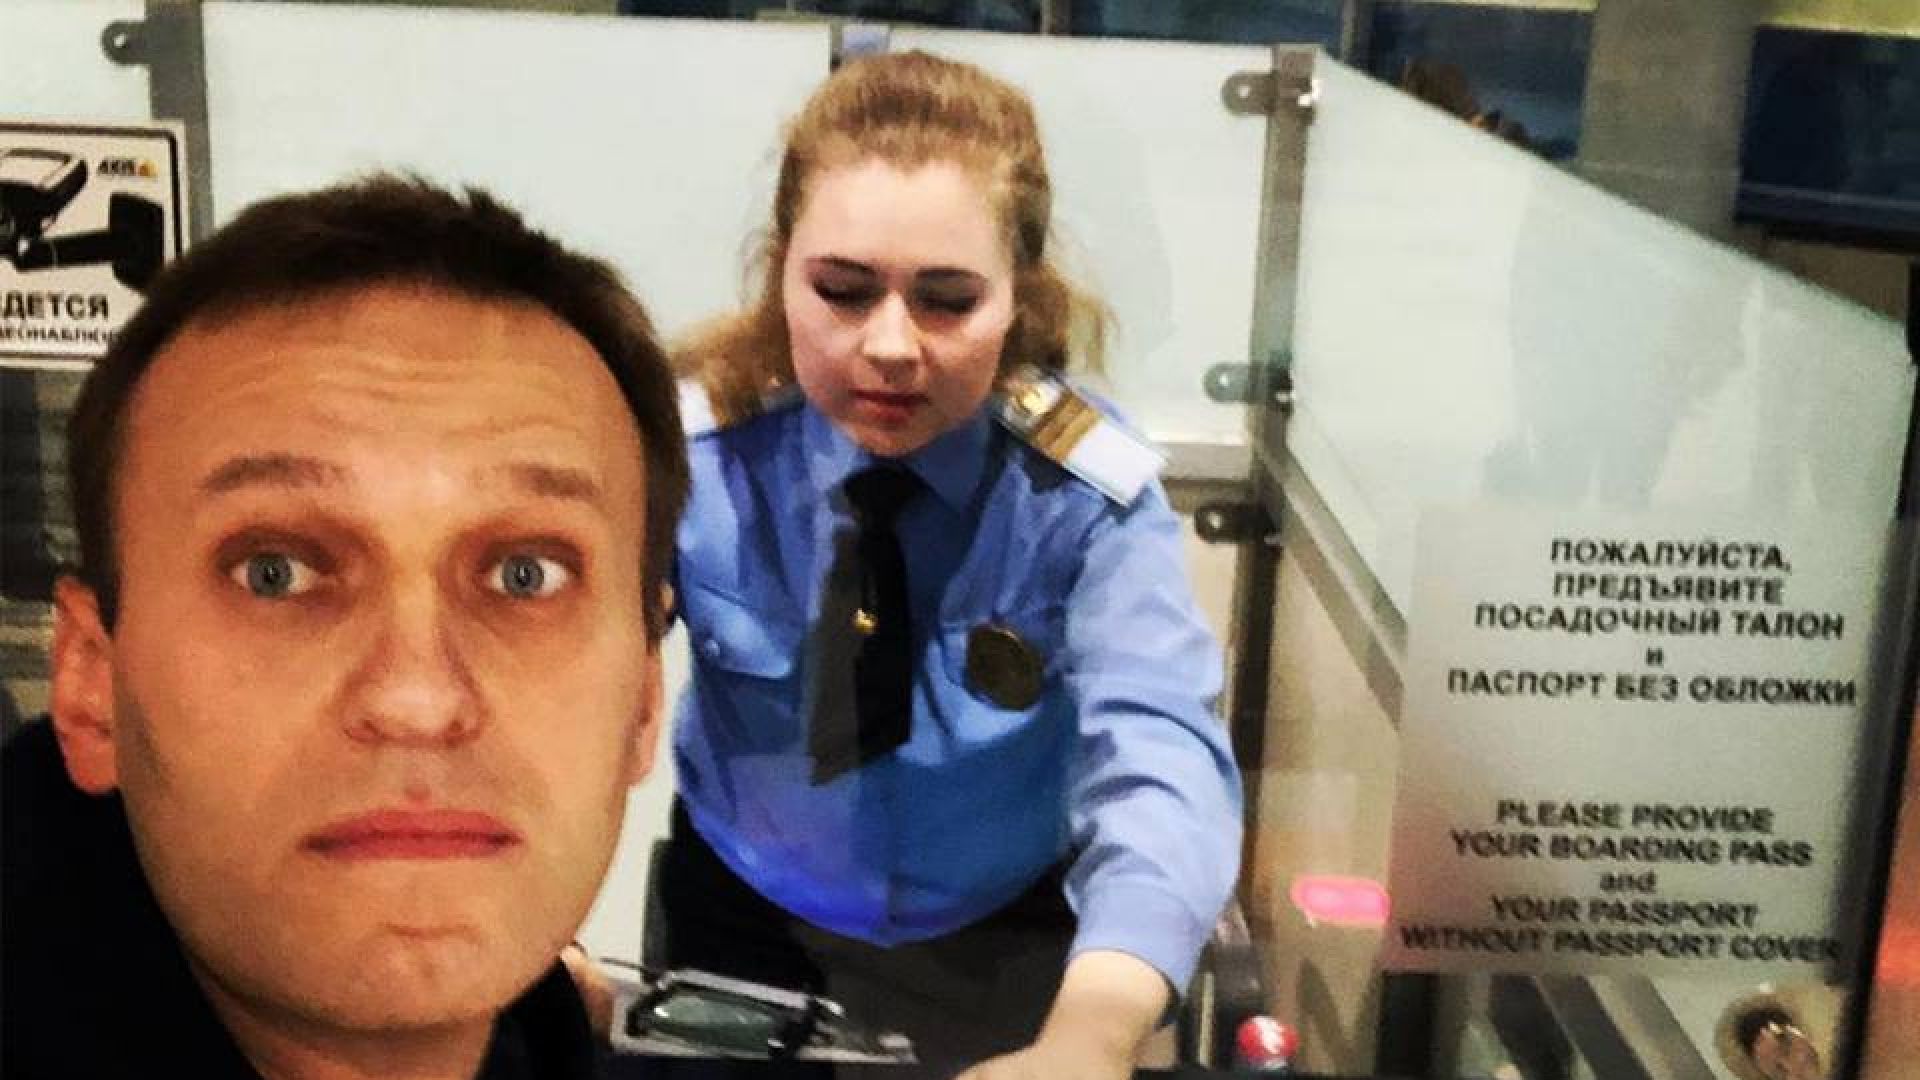 Опозиционерът Алексей Навални получи разрешение да напусне Русия днес за